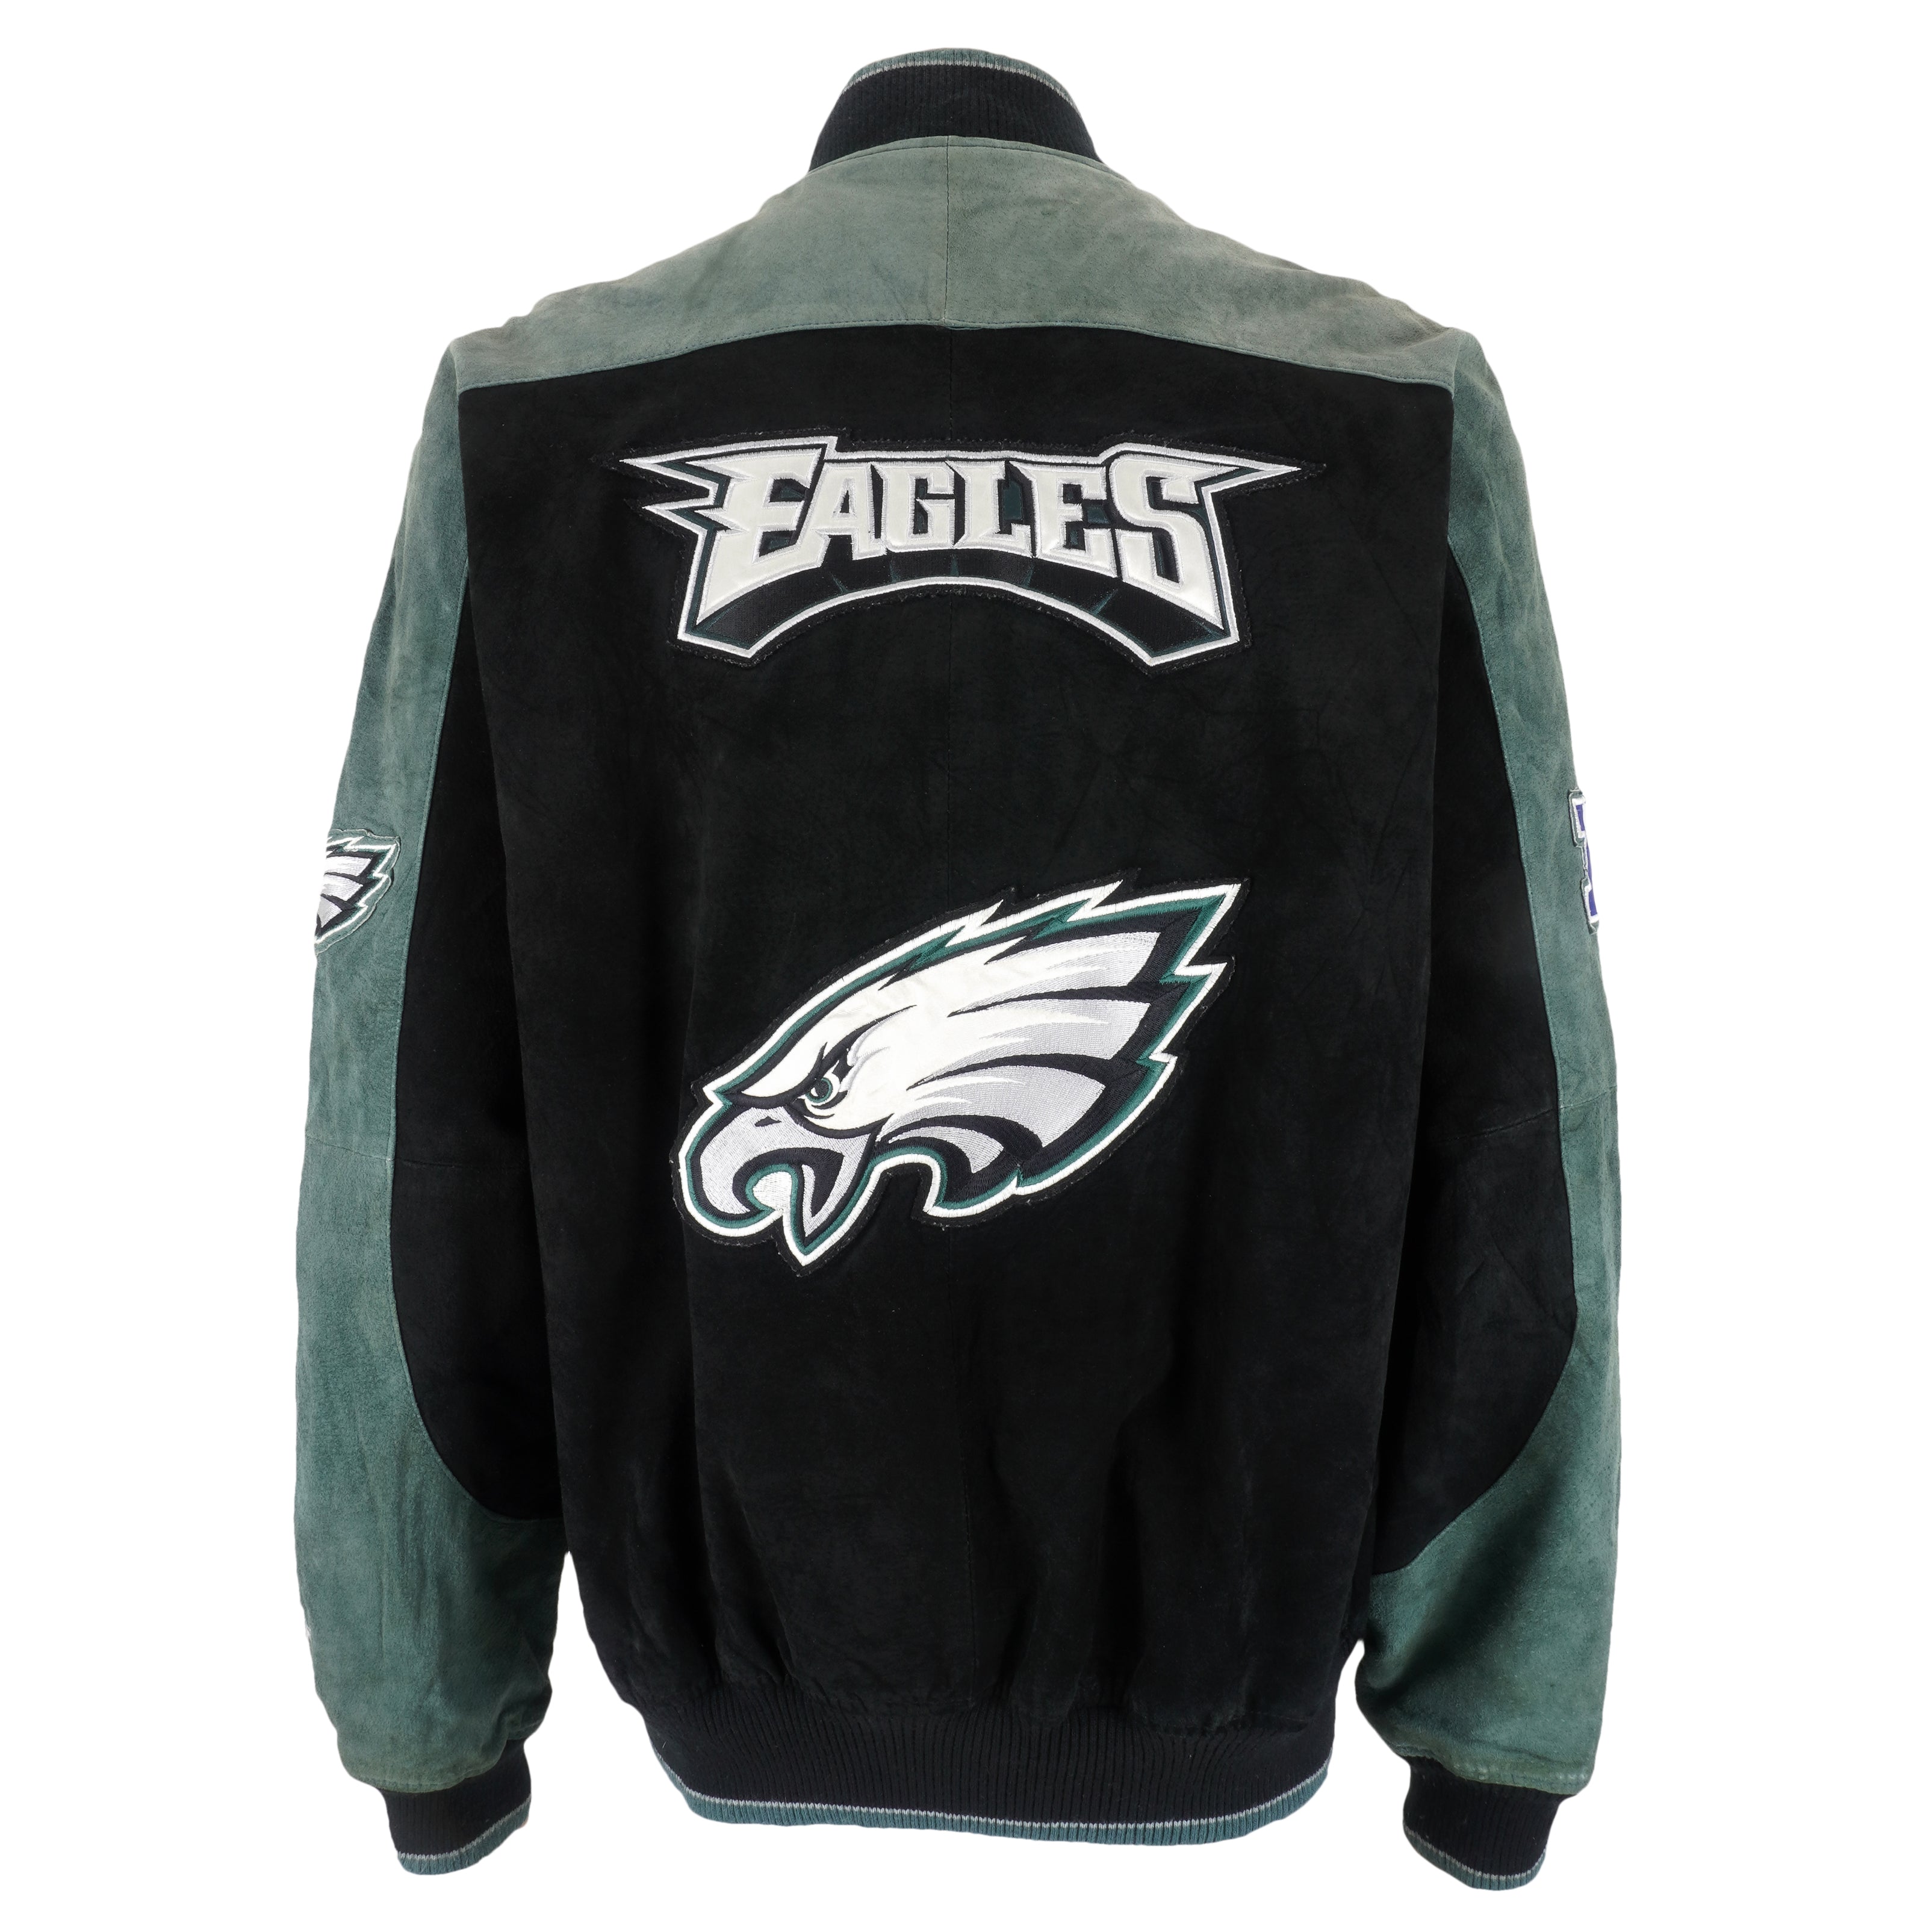 Vintage Philadelphia Eagles Starter Pro Line NFL Football Jacket Coat XL  Large